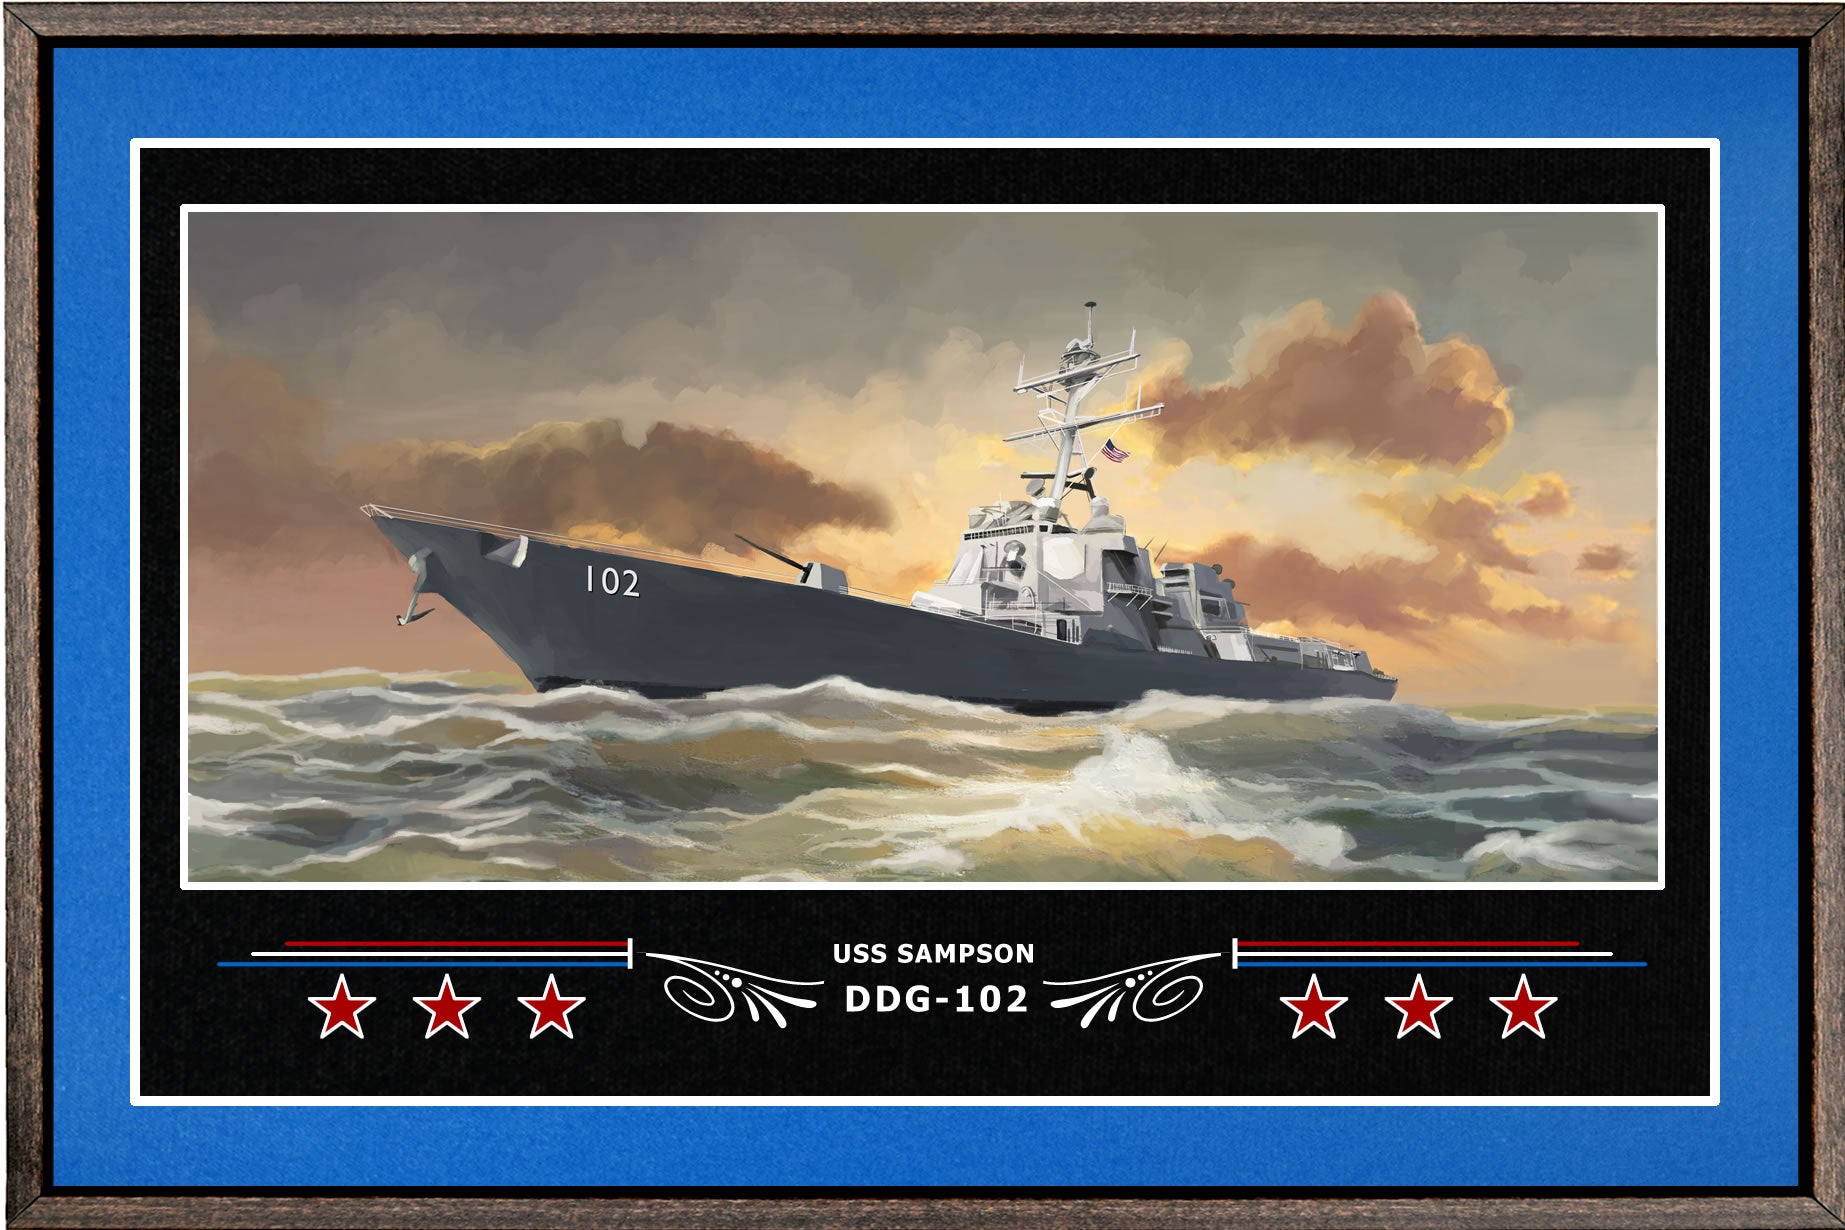 USS SAMPSON DDG 102 BOX FRAMED CANVAS ART BLUE